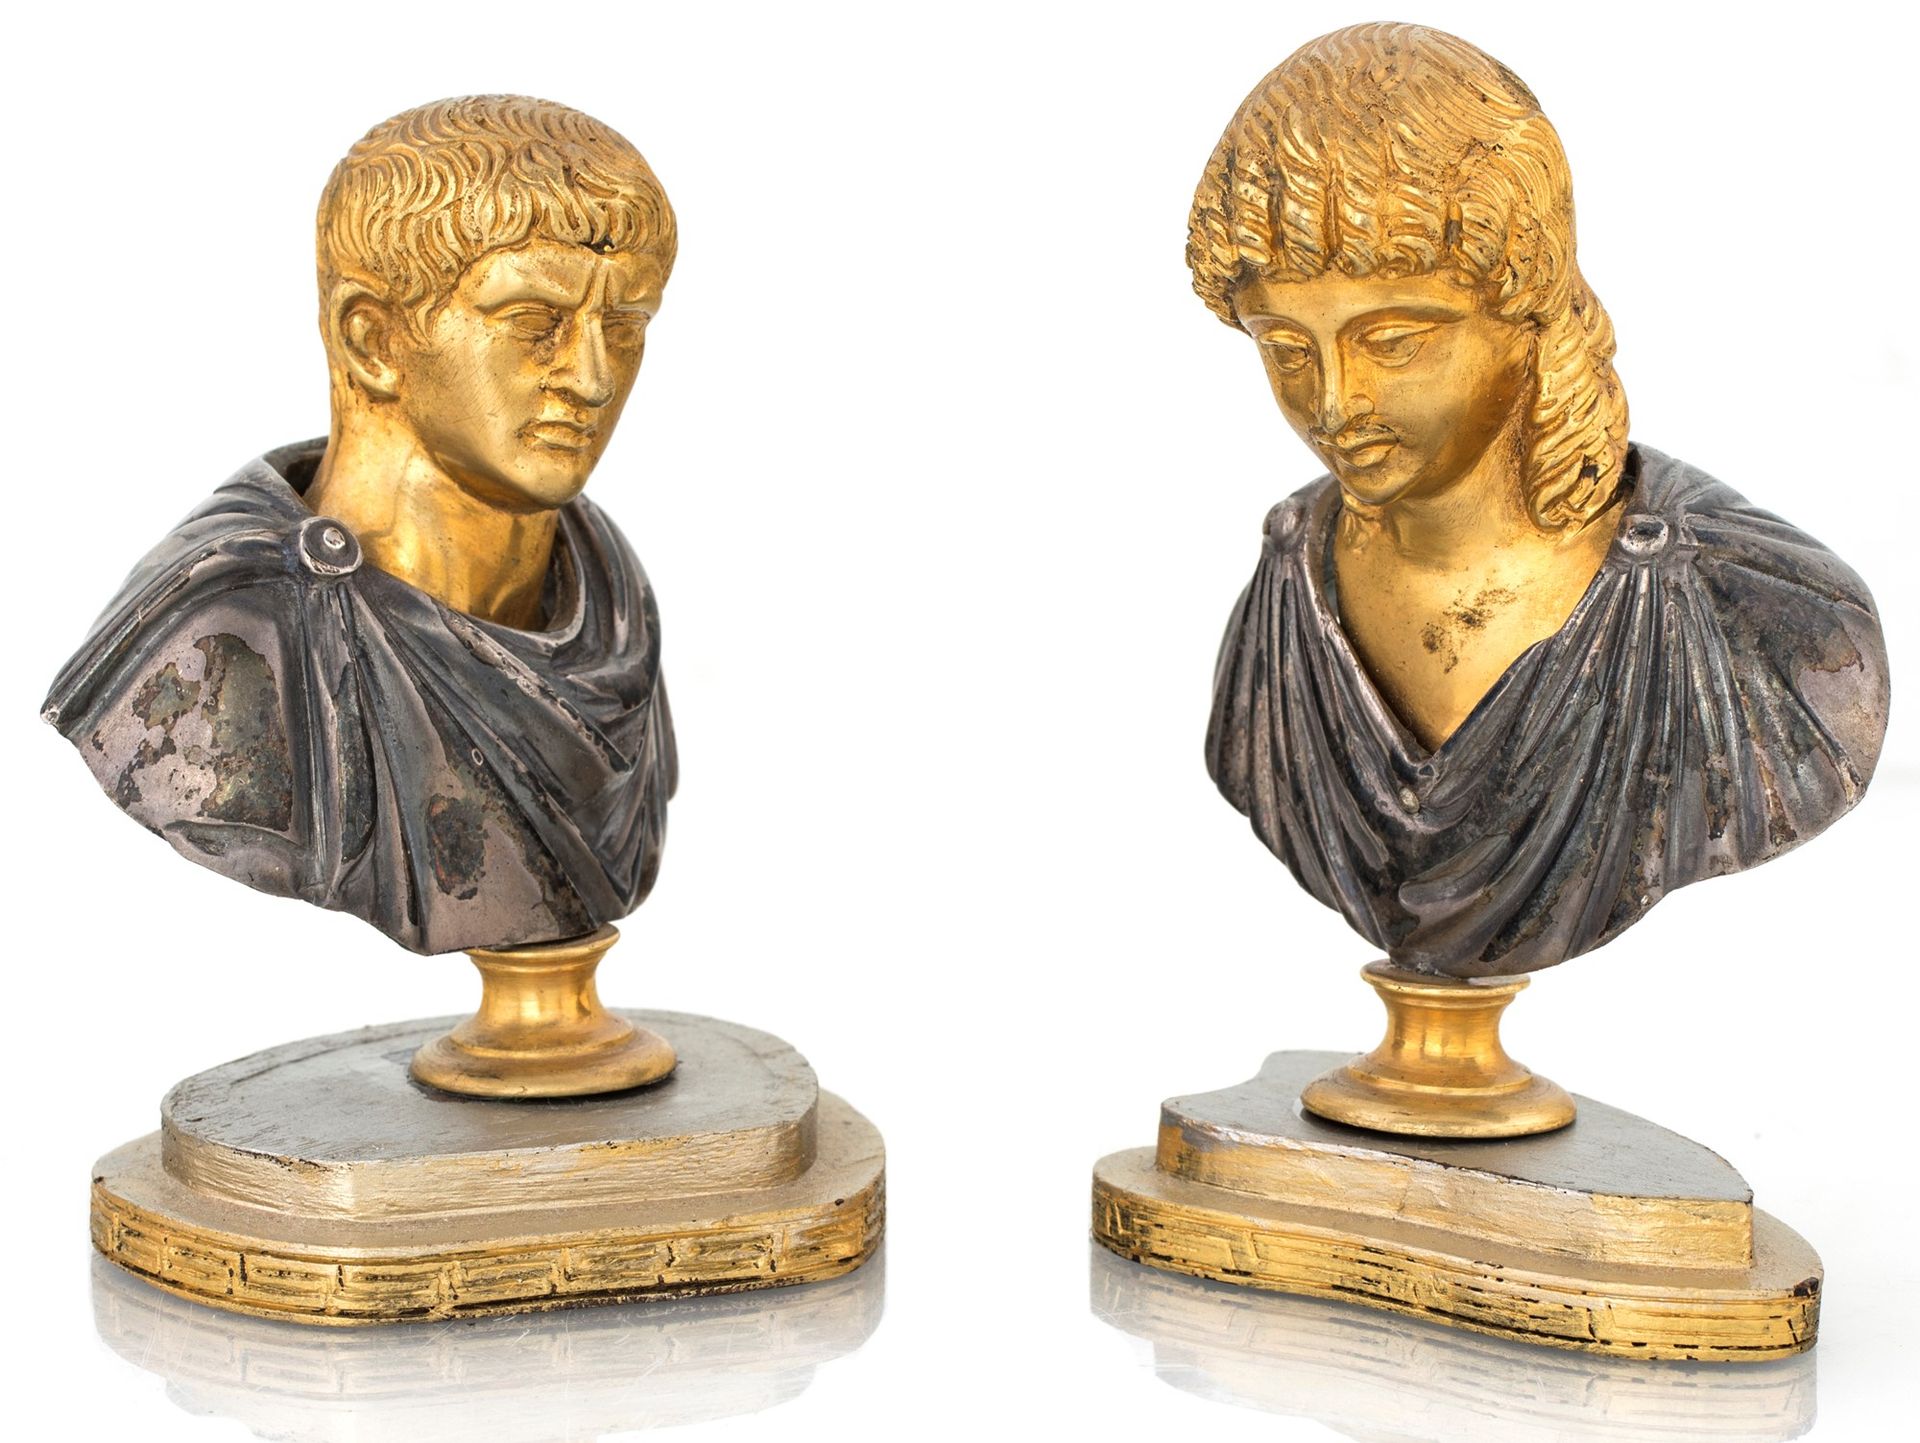 Pair of small busts in gilded and burnished bronze aus dem klassischen römischen&hellip;